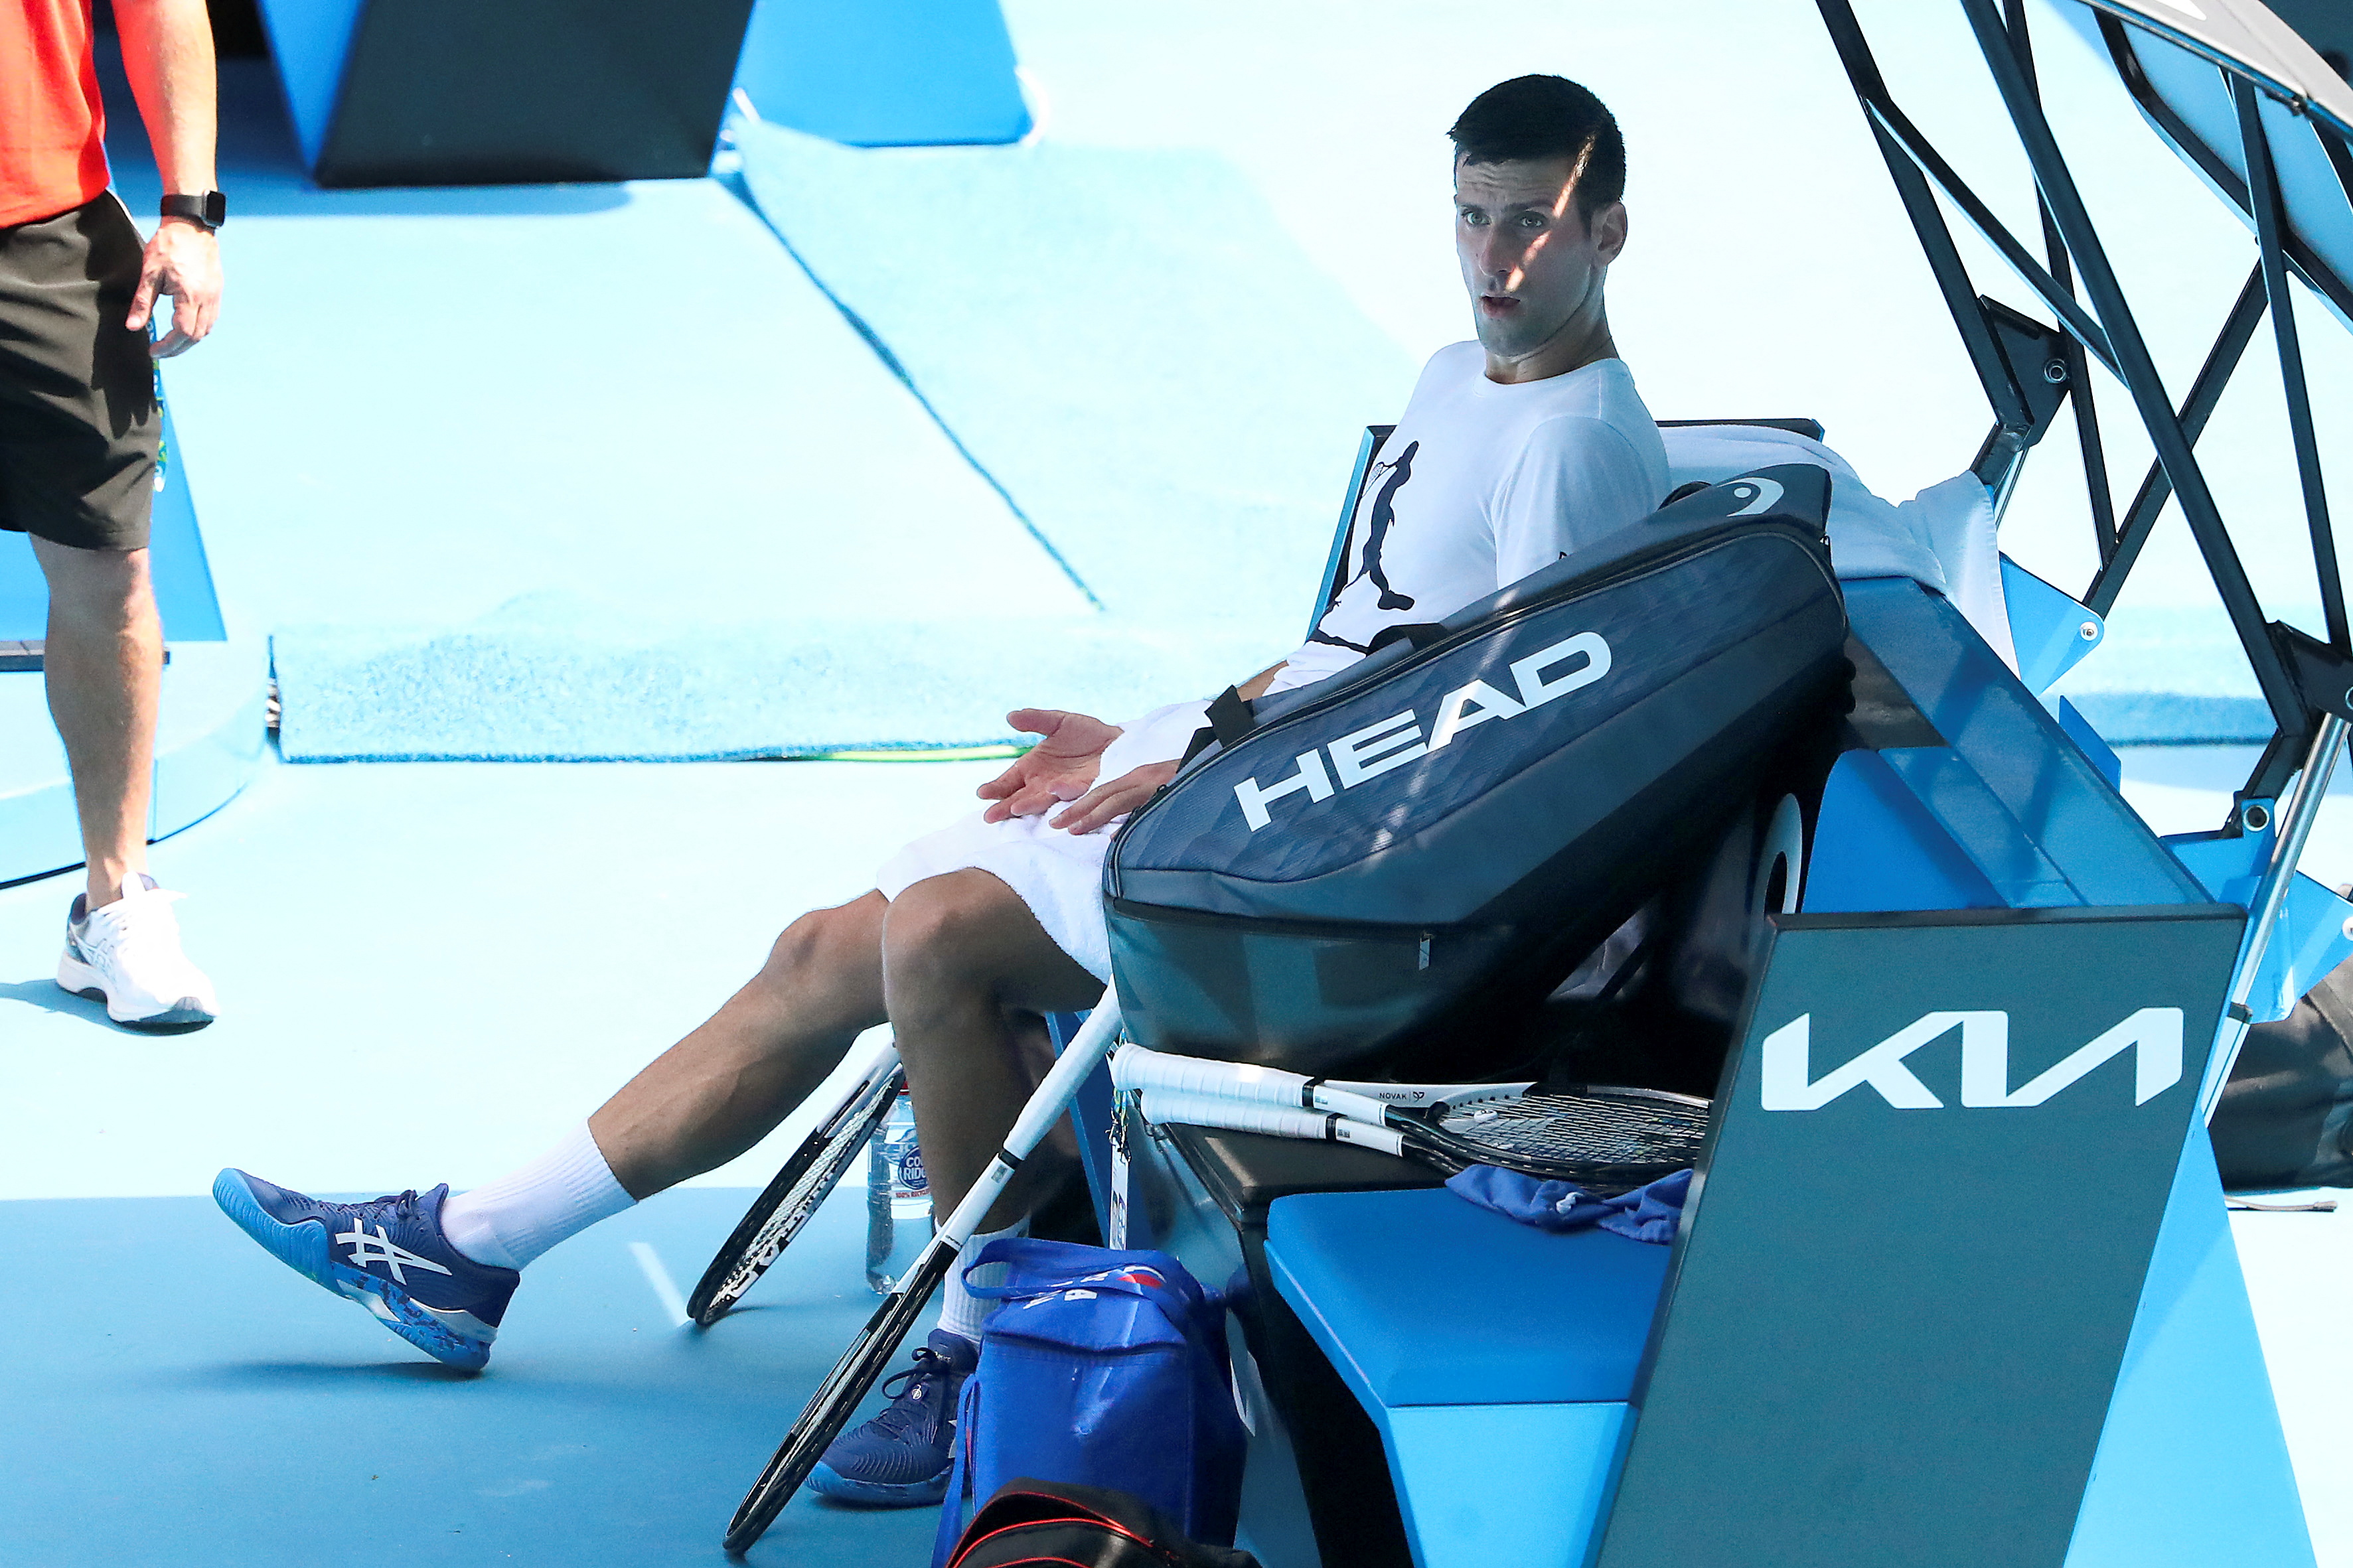 El tenista ganó el juicio pero aguarda por el veredicto final (Reuters)